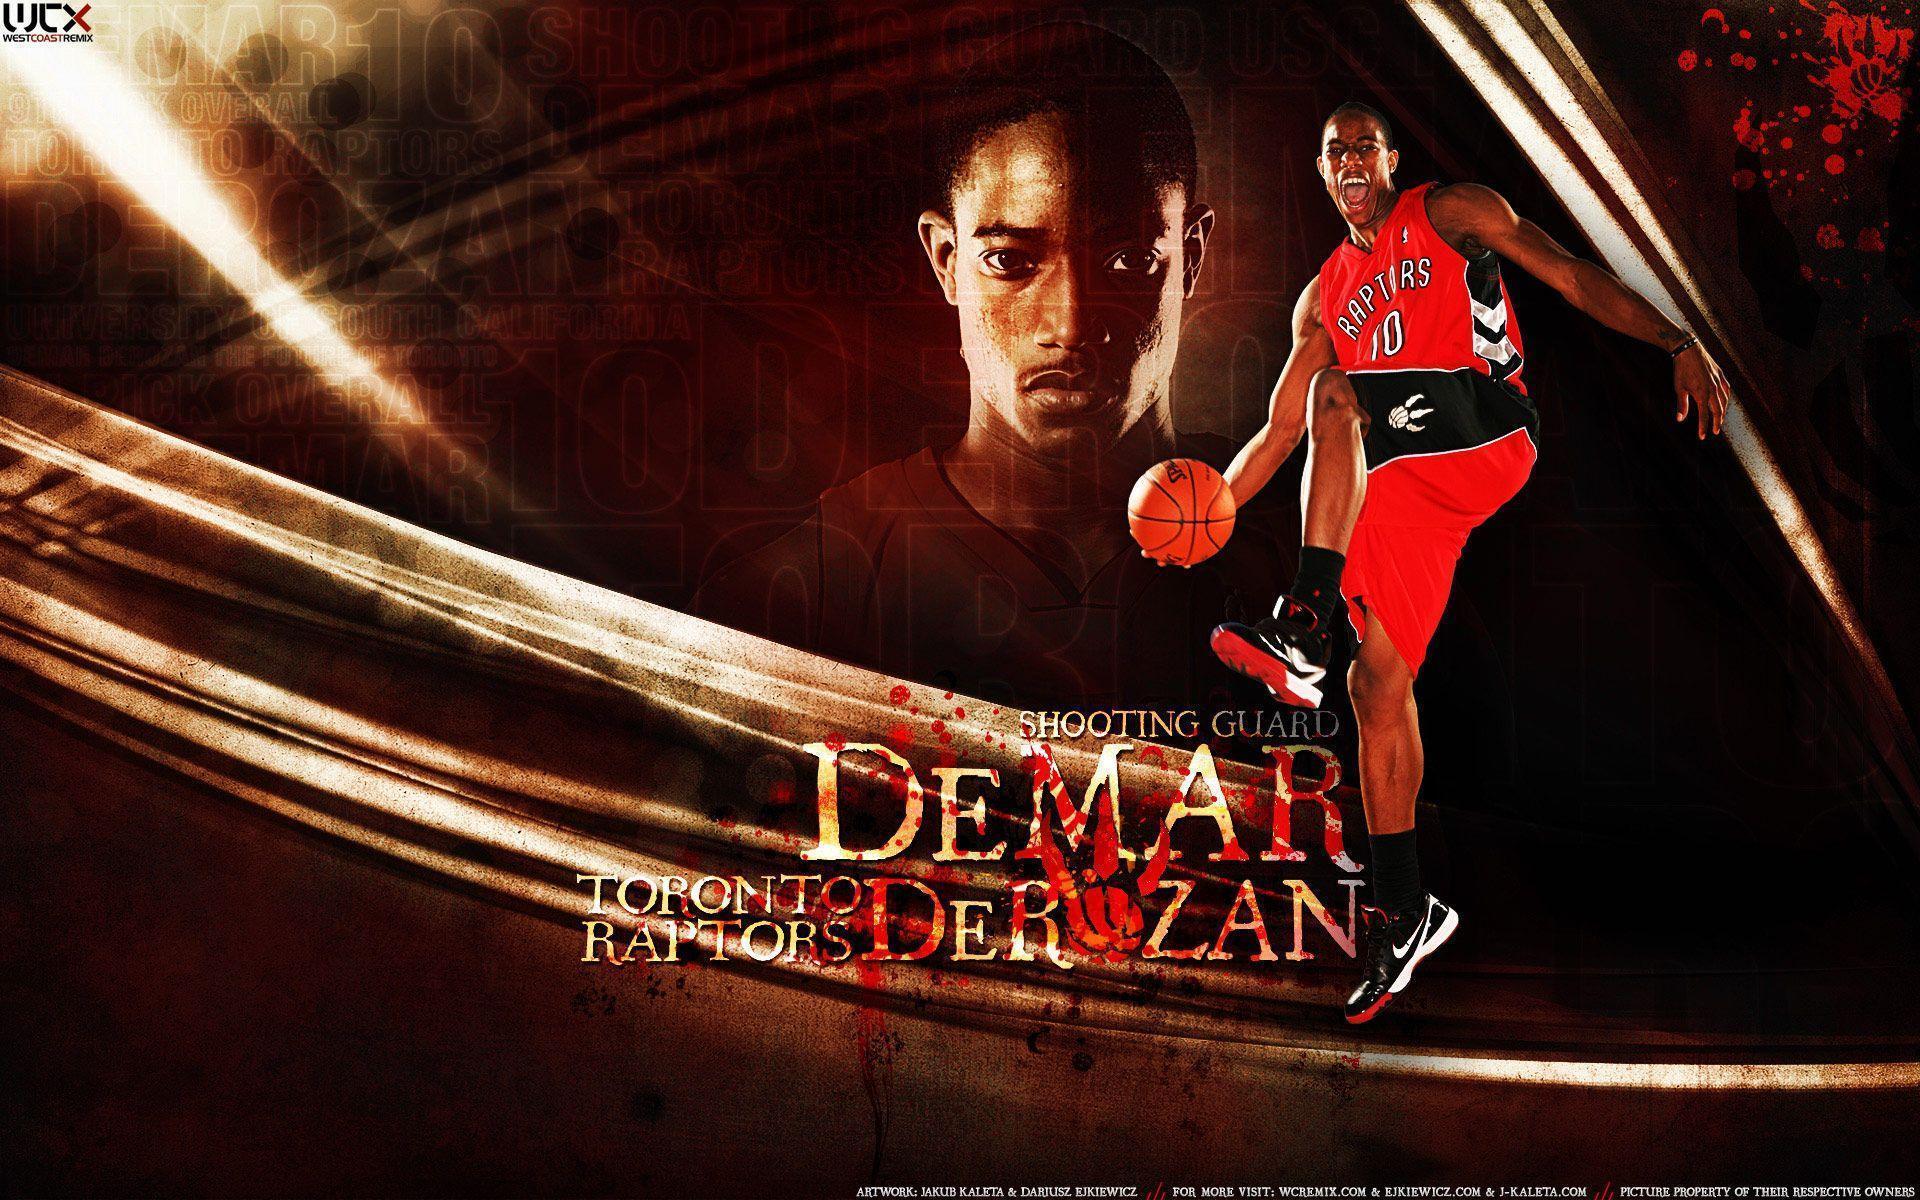 DeMar DeRozan Wallpaper. Basketball Wallpaper at